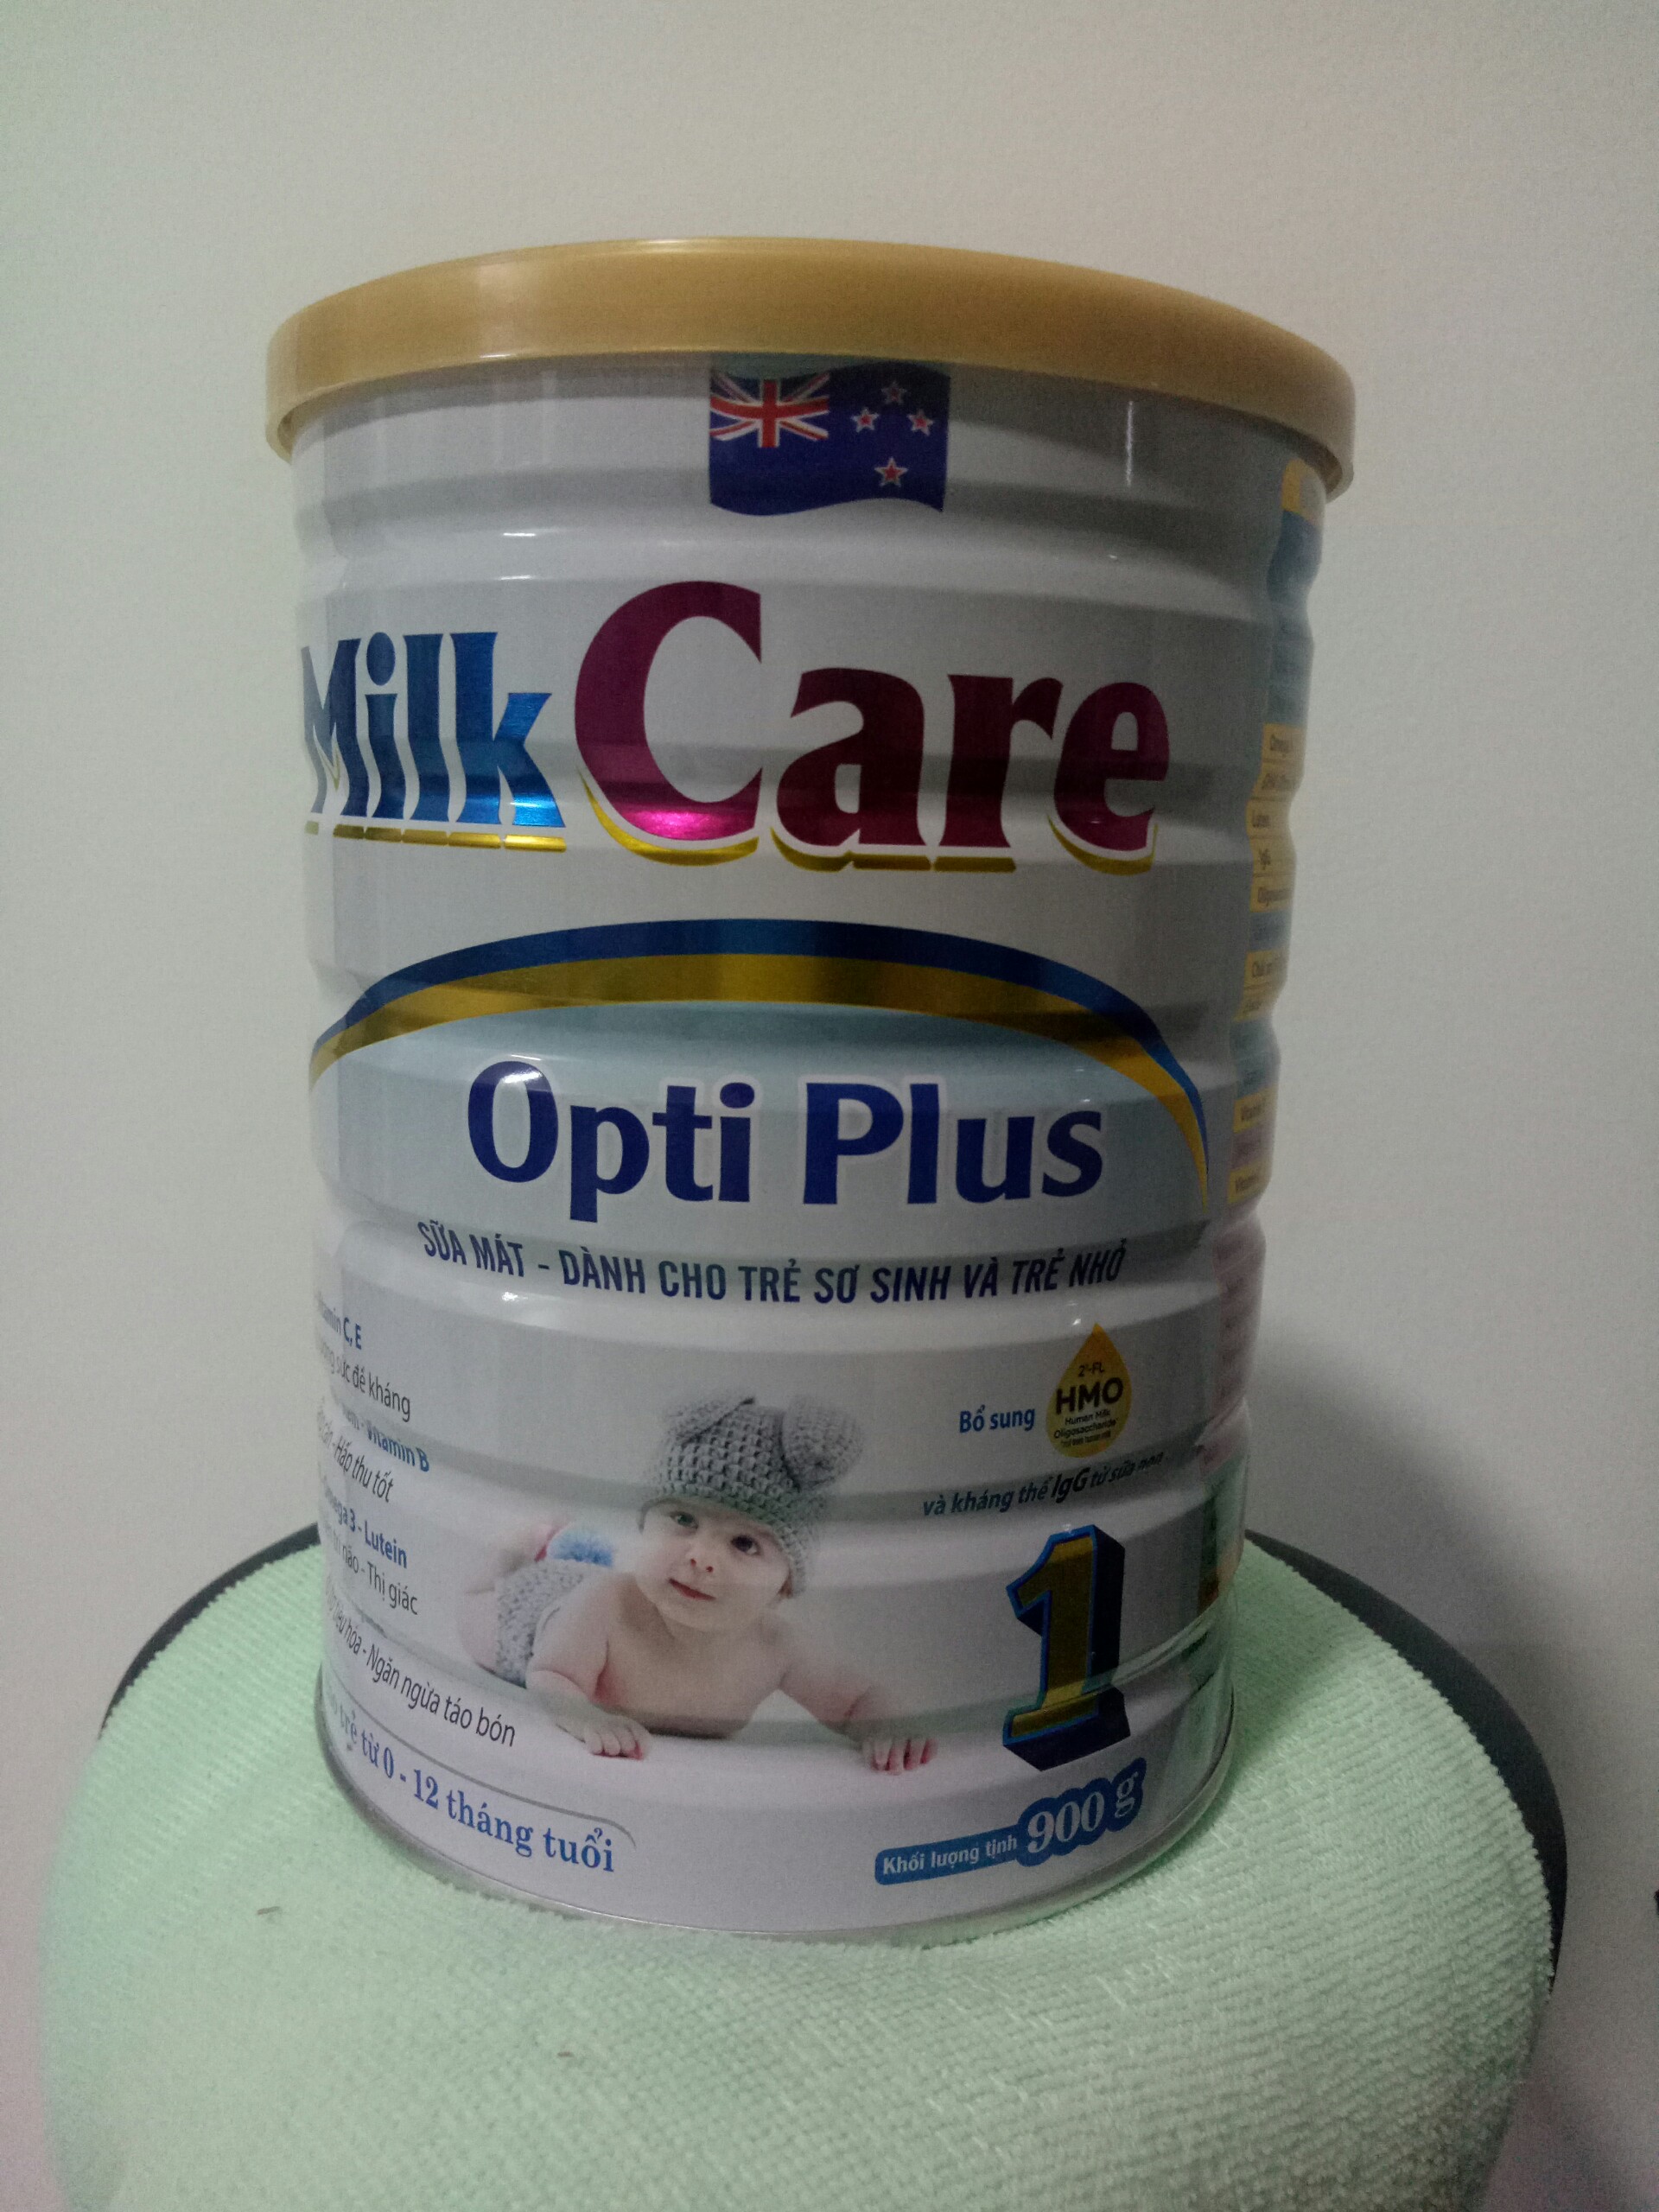 Sữa mát dành cho trẻ sơ sinh và trẻ nhỏ 0-12 tháng tuổi Milkcare Opti Plus 1 lon 900g - Dinh dưỡng cho trẻ khỏe mạnh, phát triển toàn diện